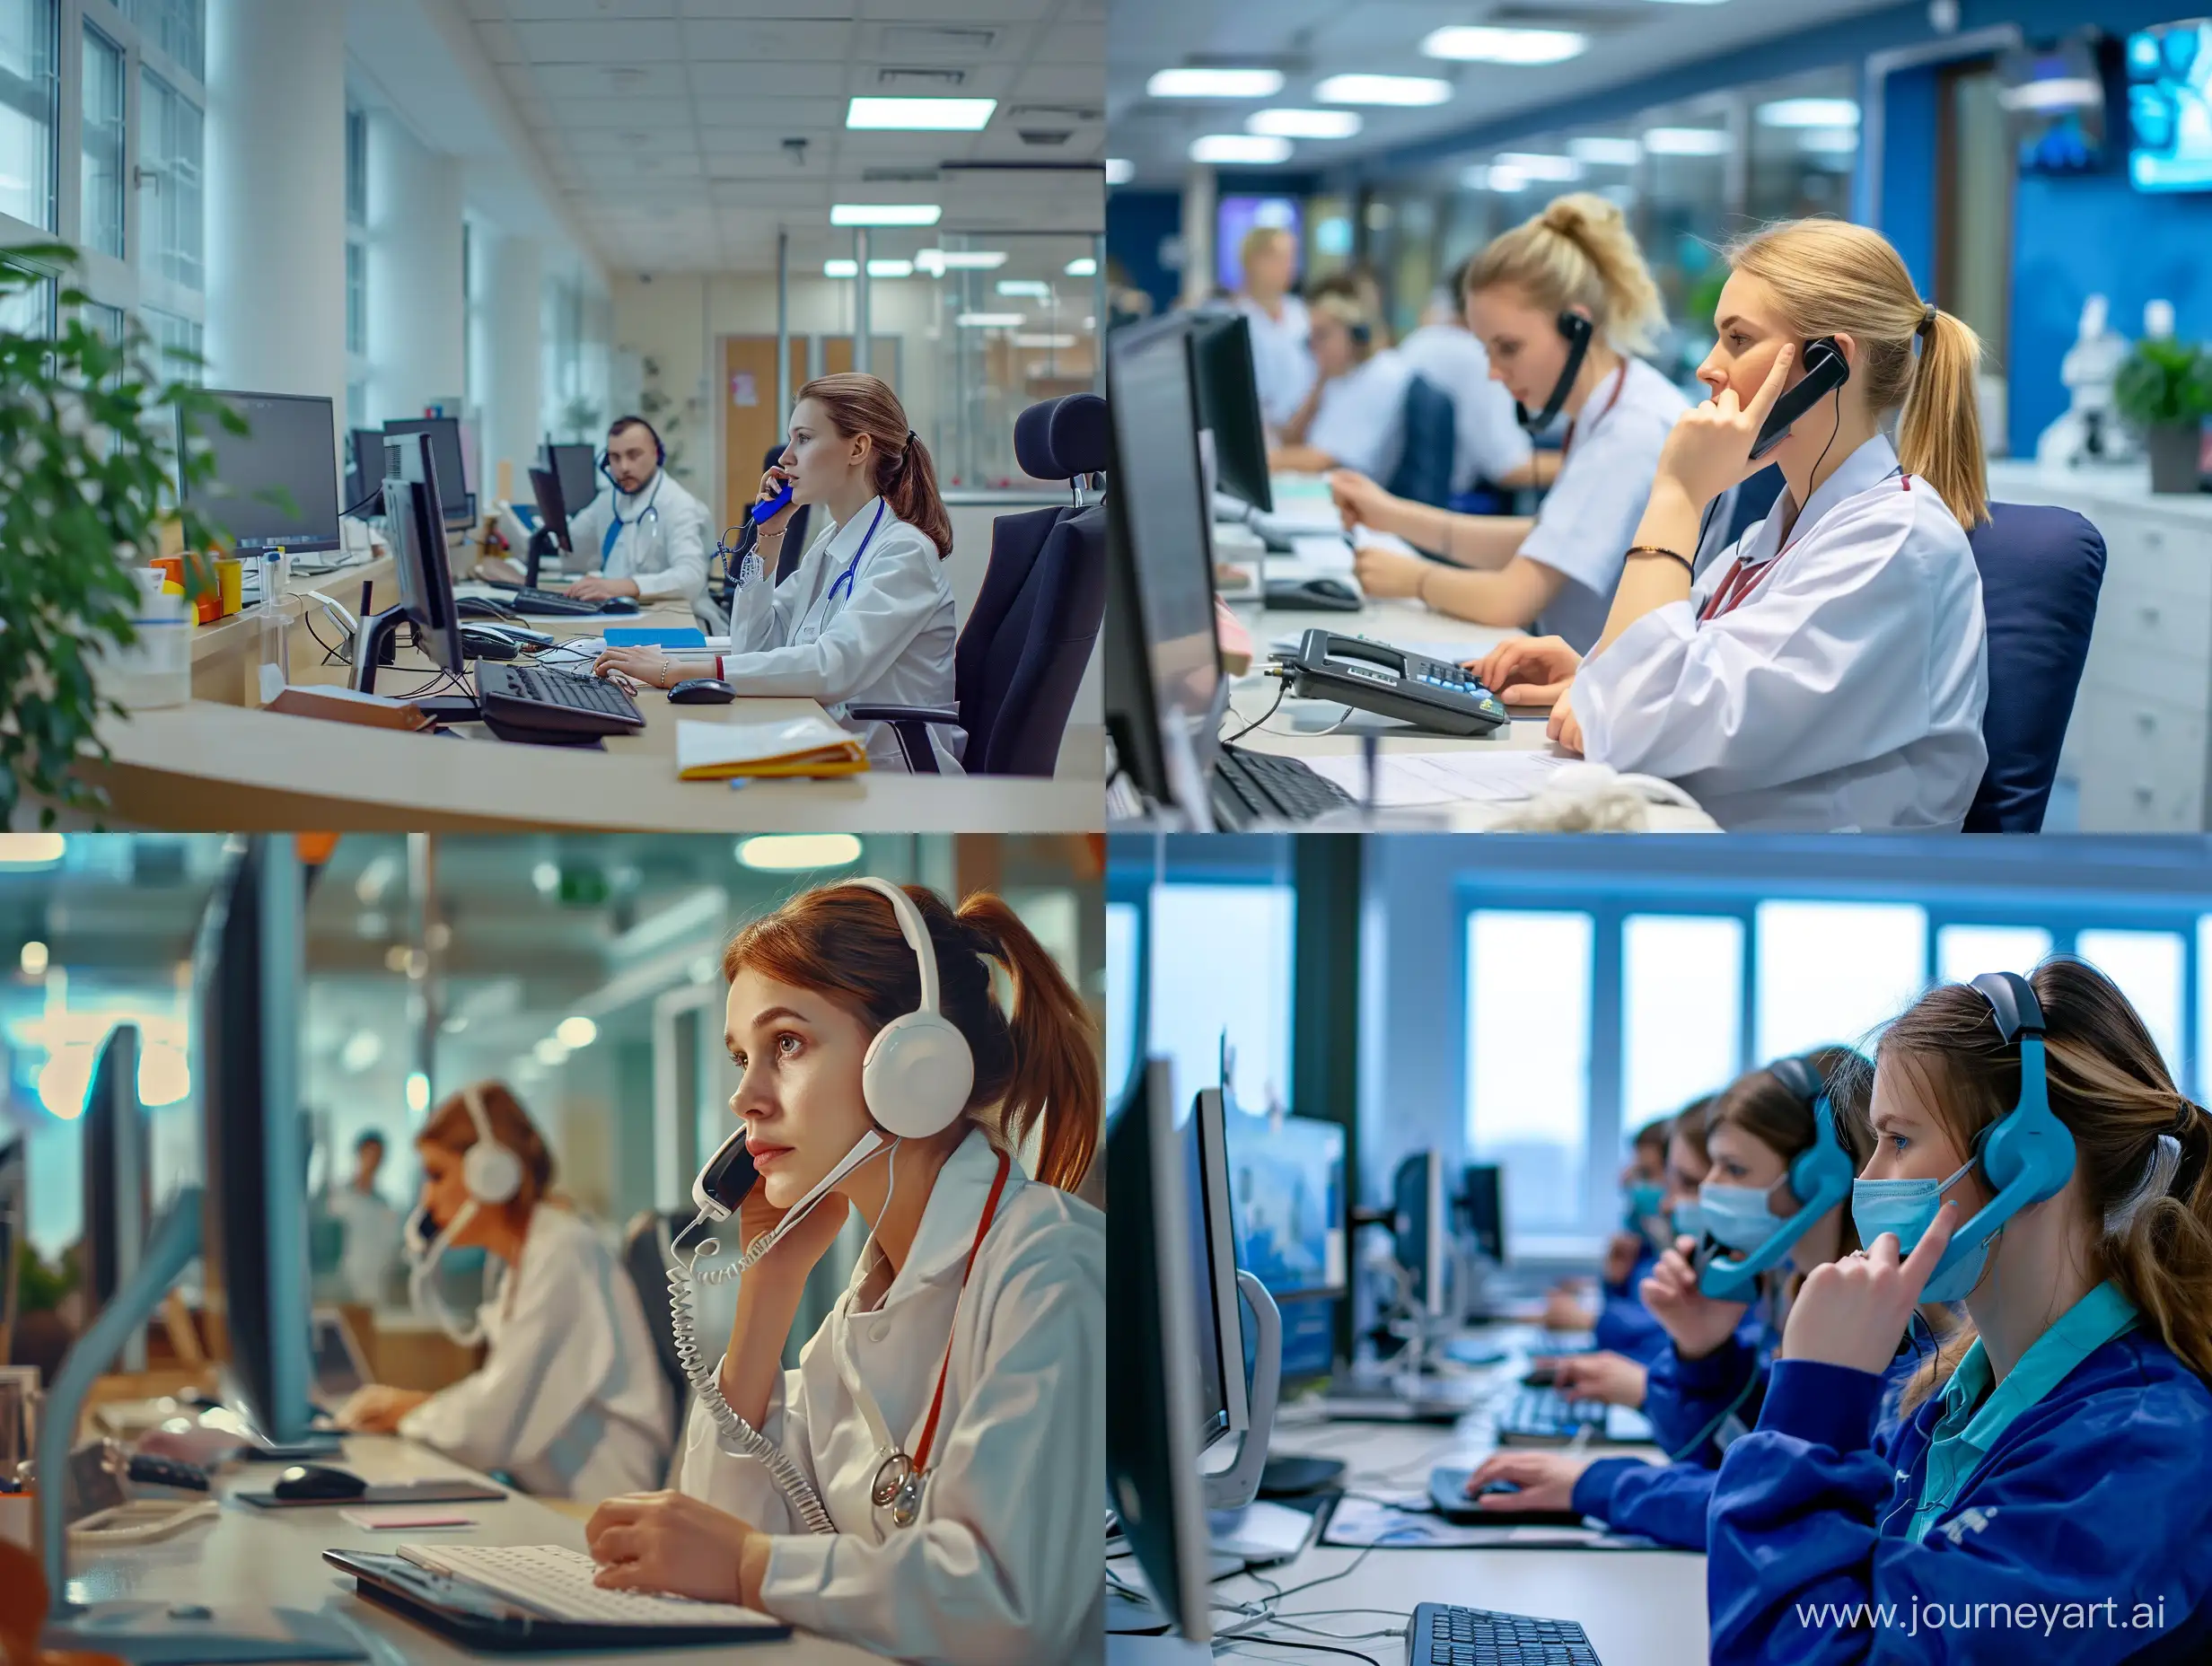 Фотография, где русскоязычные операторы медицинской телефонной справочной принимают звонки от пациентов в офисе компании, фотореализм, детали